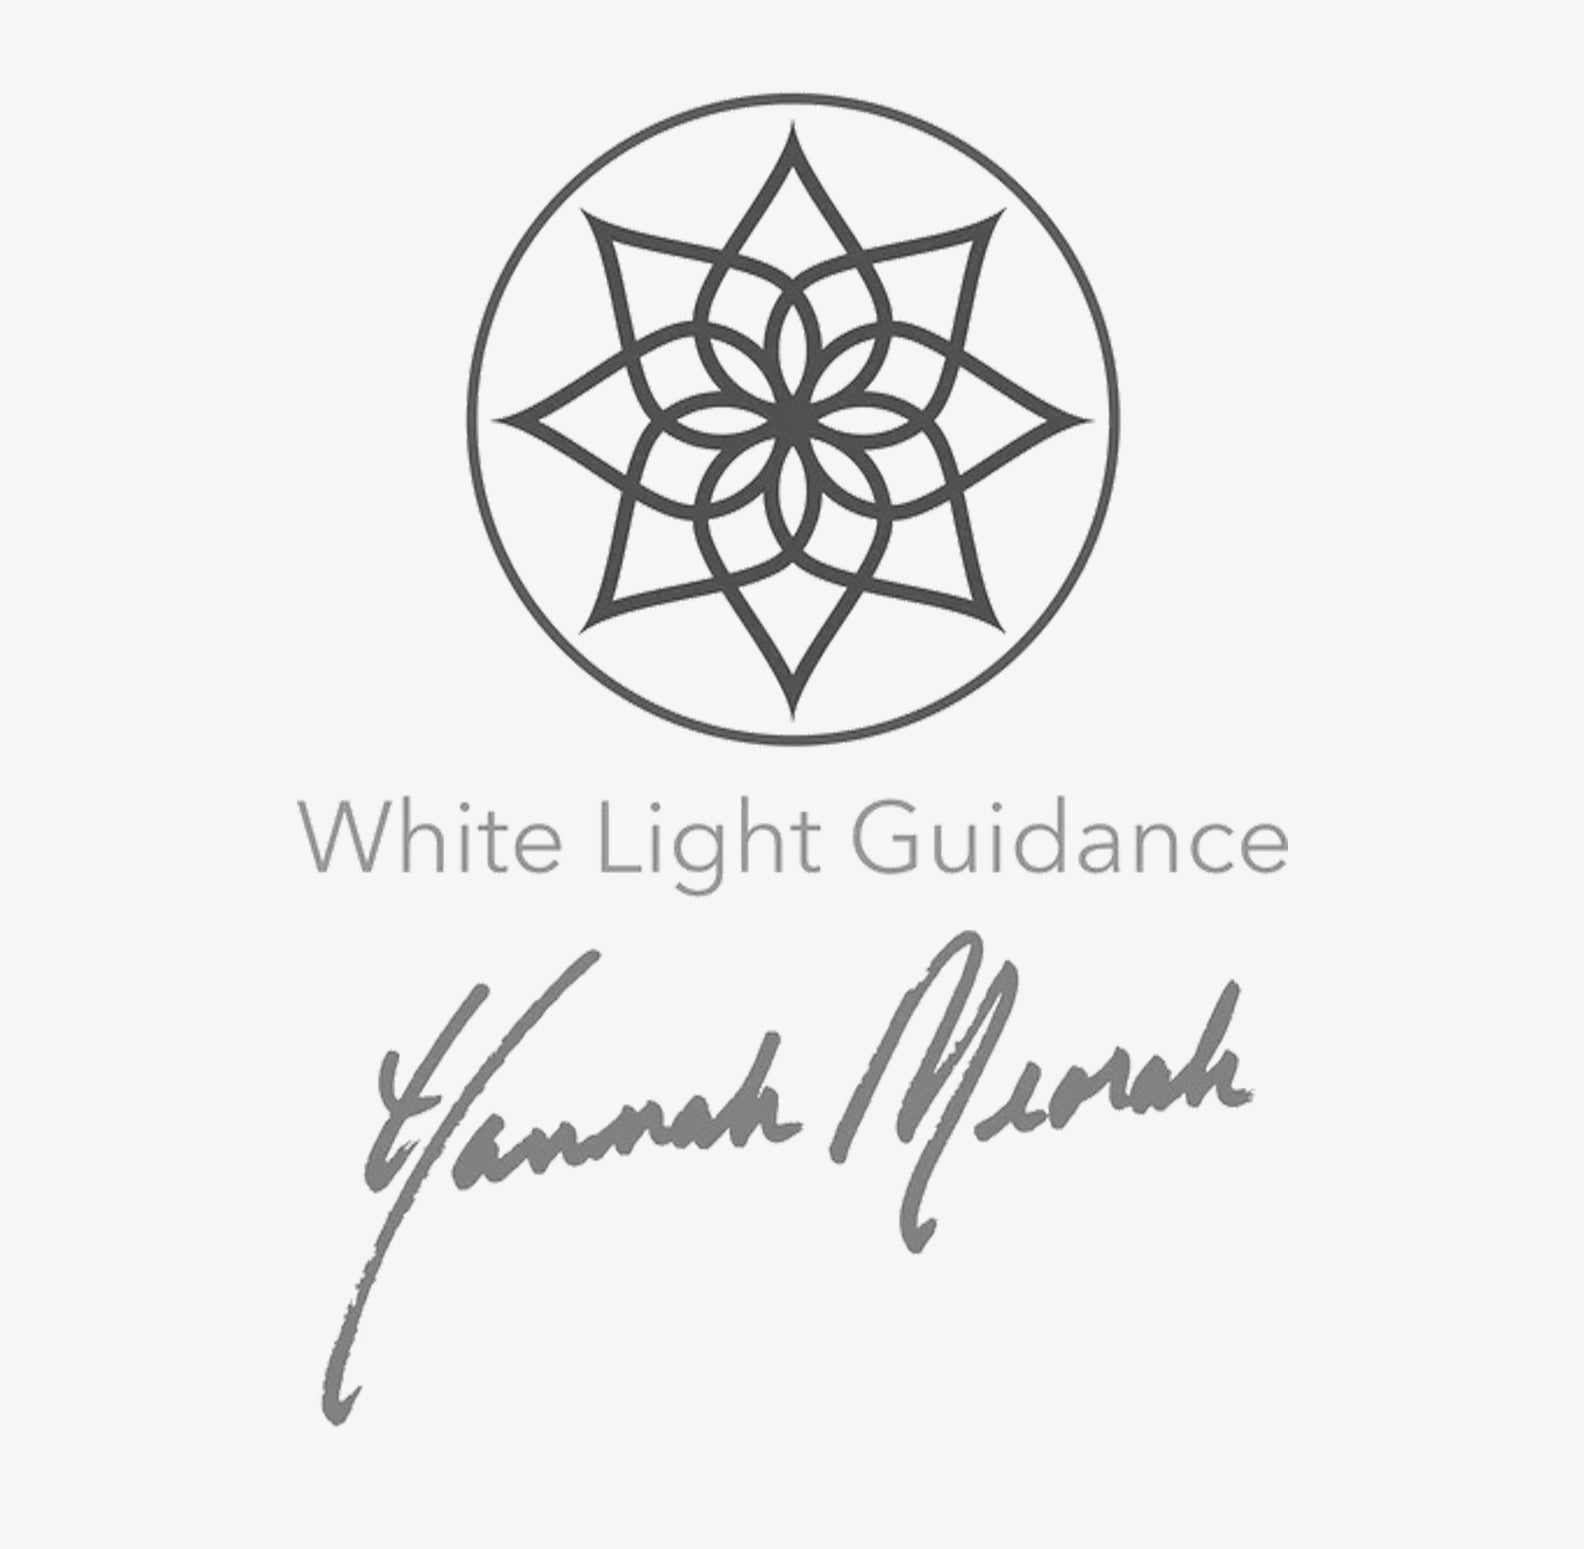 WHITE LIGHT GUIDANCE